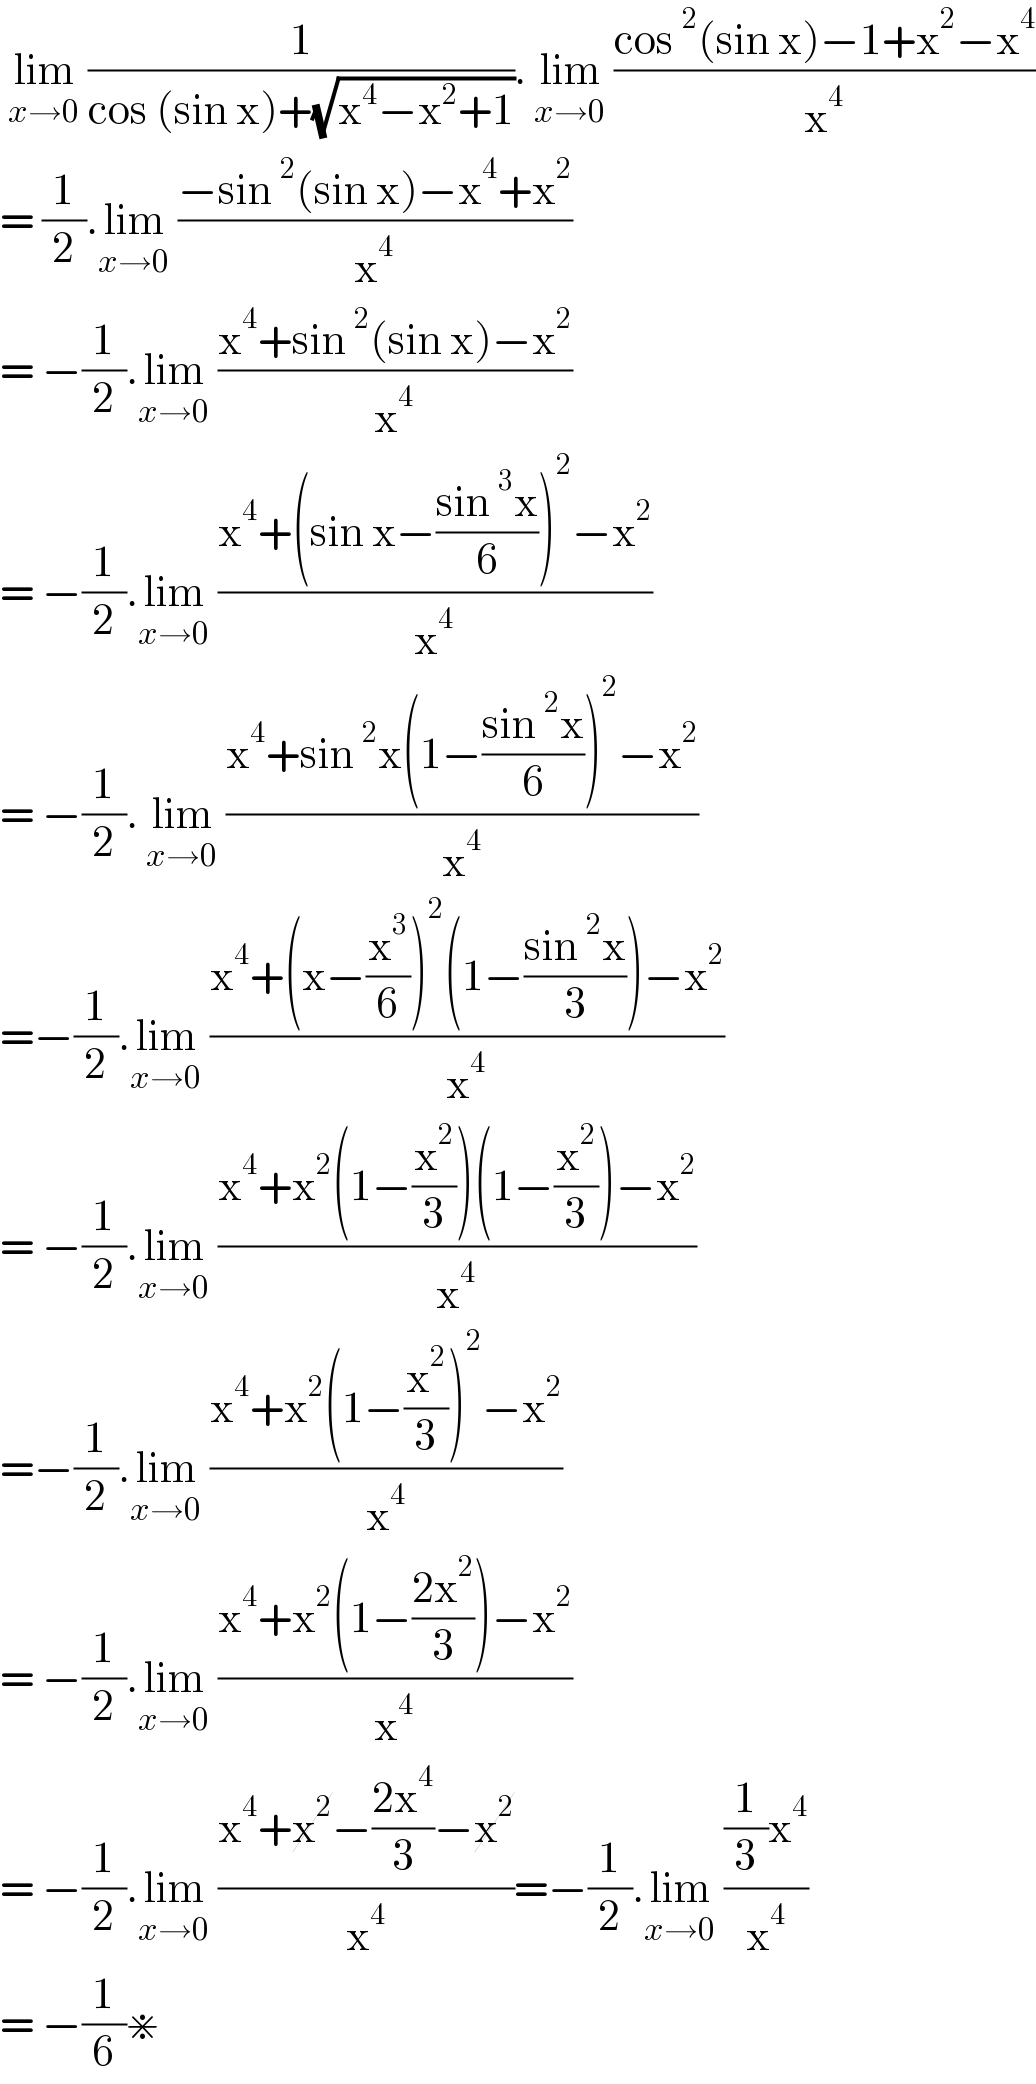  lim_(x→0)  (1/(cos (sin x)+(√(x^4 −x^2 +1)))). lim_(x→0)  ((cos^2 (sin x)−1+x^2 −x^4 )/x^4 )  = (1/2).lim_(x→0)  ((−sin^2 (sin x)−x^4 +x^2 )/x^4 )  = −(1/2).lim_(x→0)  ((x^4 +sin^2 (sin x)−x^2 )/x^4 )  = −(1/2).lim_(x→0)  ((x^4 +(sin x−((sin^3 x)/6))^2 −x^2 )/x^4 )  = −(1/2). lim_(x→0)  ((x^4 +sin^2 x(1−((sin^2 x)/6))^2 −x^2 )/x^4 )  =−(1/2).lim_(x→0)  ((x^4 +(x−(x^3 /6))^2 (1−((sin^2 x)/3))−x^2 )/x^4 )  = −(1/2).lim_(x→0)  ((x^4 +x^2 (1−(x^2 /3))(1−(x^2 /3))−x^2 )/x^4 )  =−(1/2).lim_(x→0)  ((x^4 +x^2 (1−(x^2 /3))^2 −x^2 )/x^4 )  = −(1/2).lim_(x→0)  ((x^4 +x^2 (1−((2x^2 )/3))−x^2 )/x^4 )  = −(1/2).lim_(x→0)  ((x^4 +x^2 −((2x^4 )/3)−x^2 )/x^4 )=−(1/2).lim_(x→0)  (((1/3)x^4 )/x^4 )  = −(1/6)⋇   